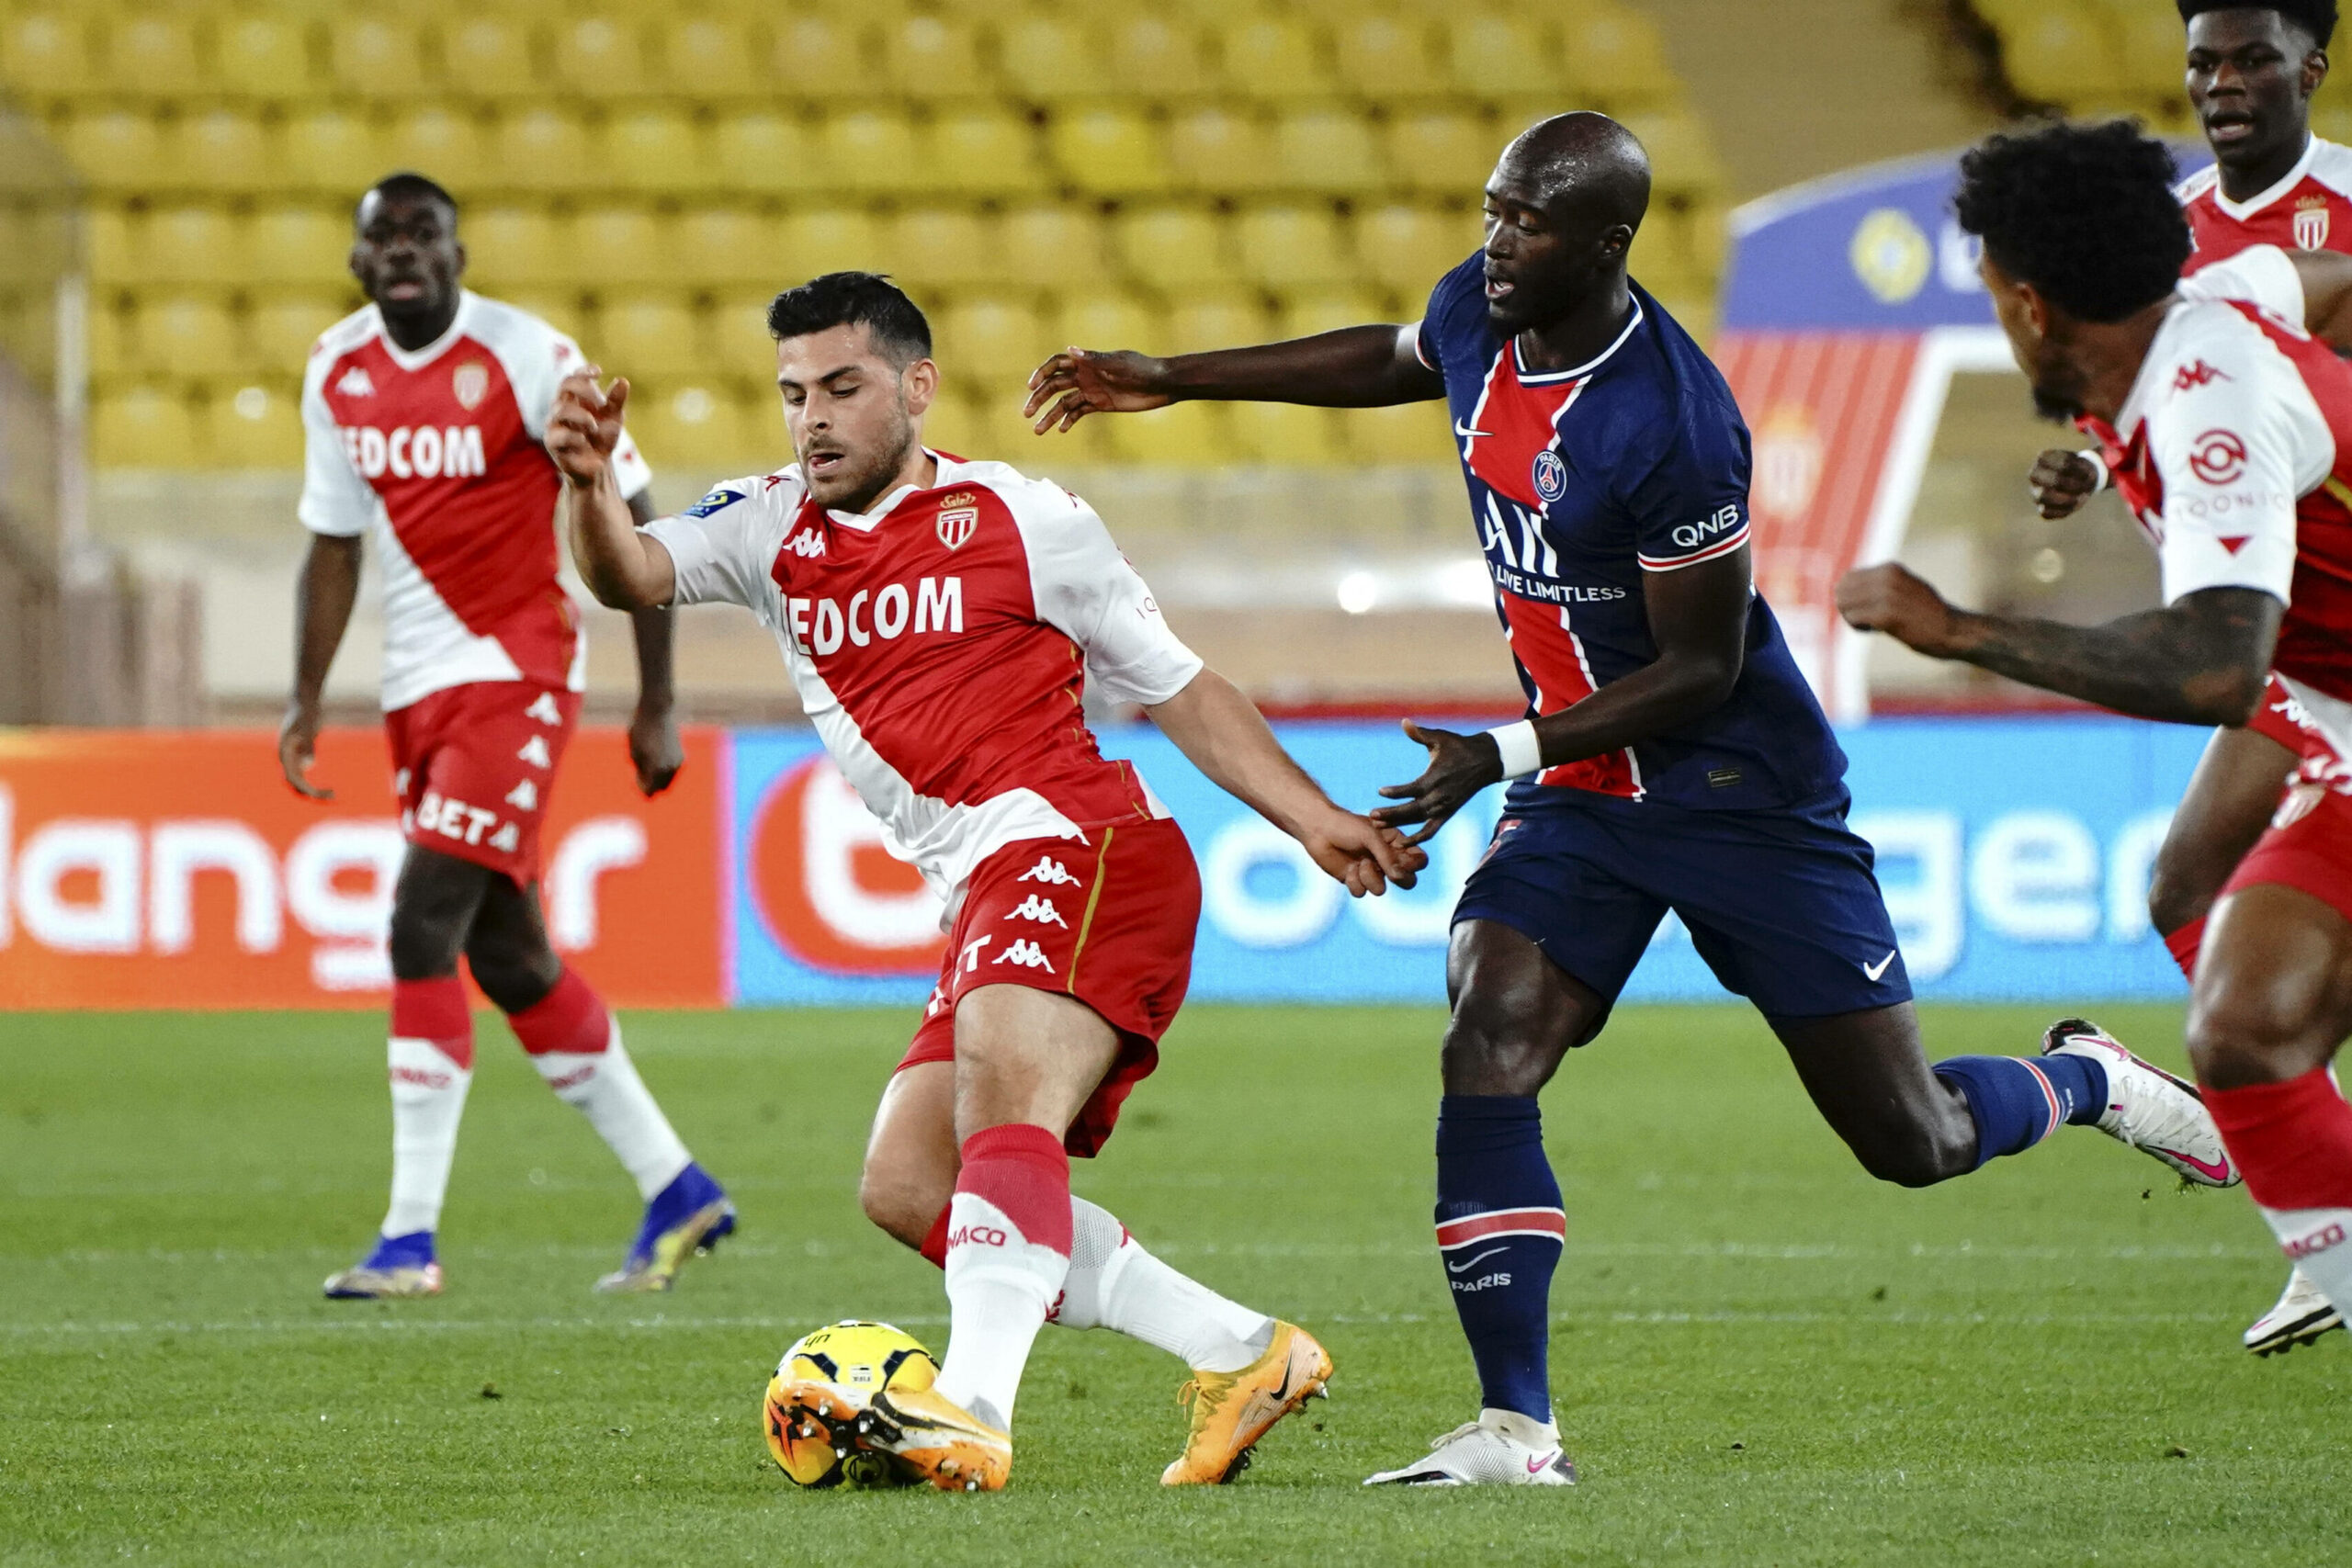 Finale der Coupe de France: Monaco vs PSG – Triumphiert David erneut gegen Goliath?